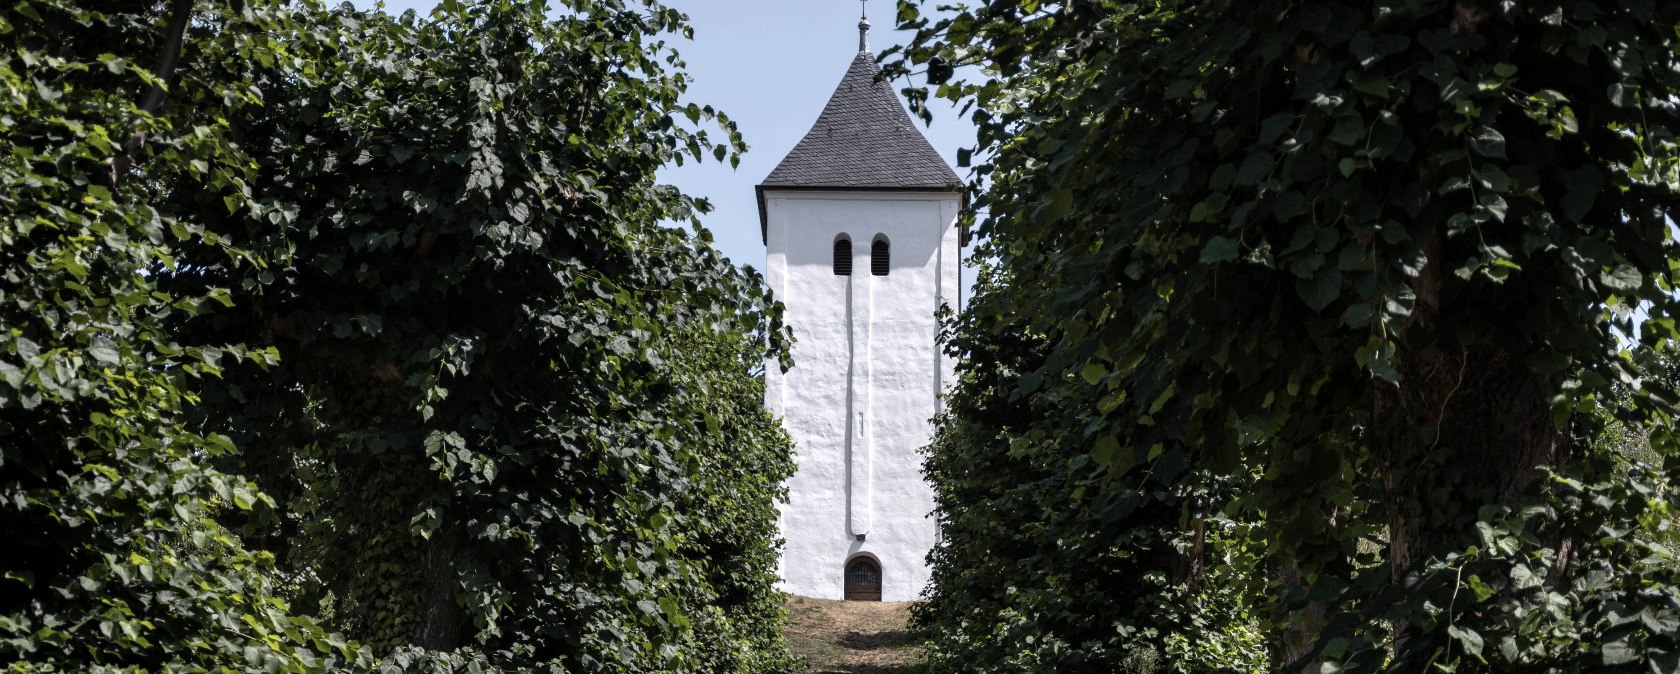 Allee Swister Turm, EifelSpur zwischen Ville und Eifel, © Nordeifel Tourismus GmbH